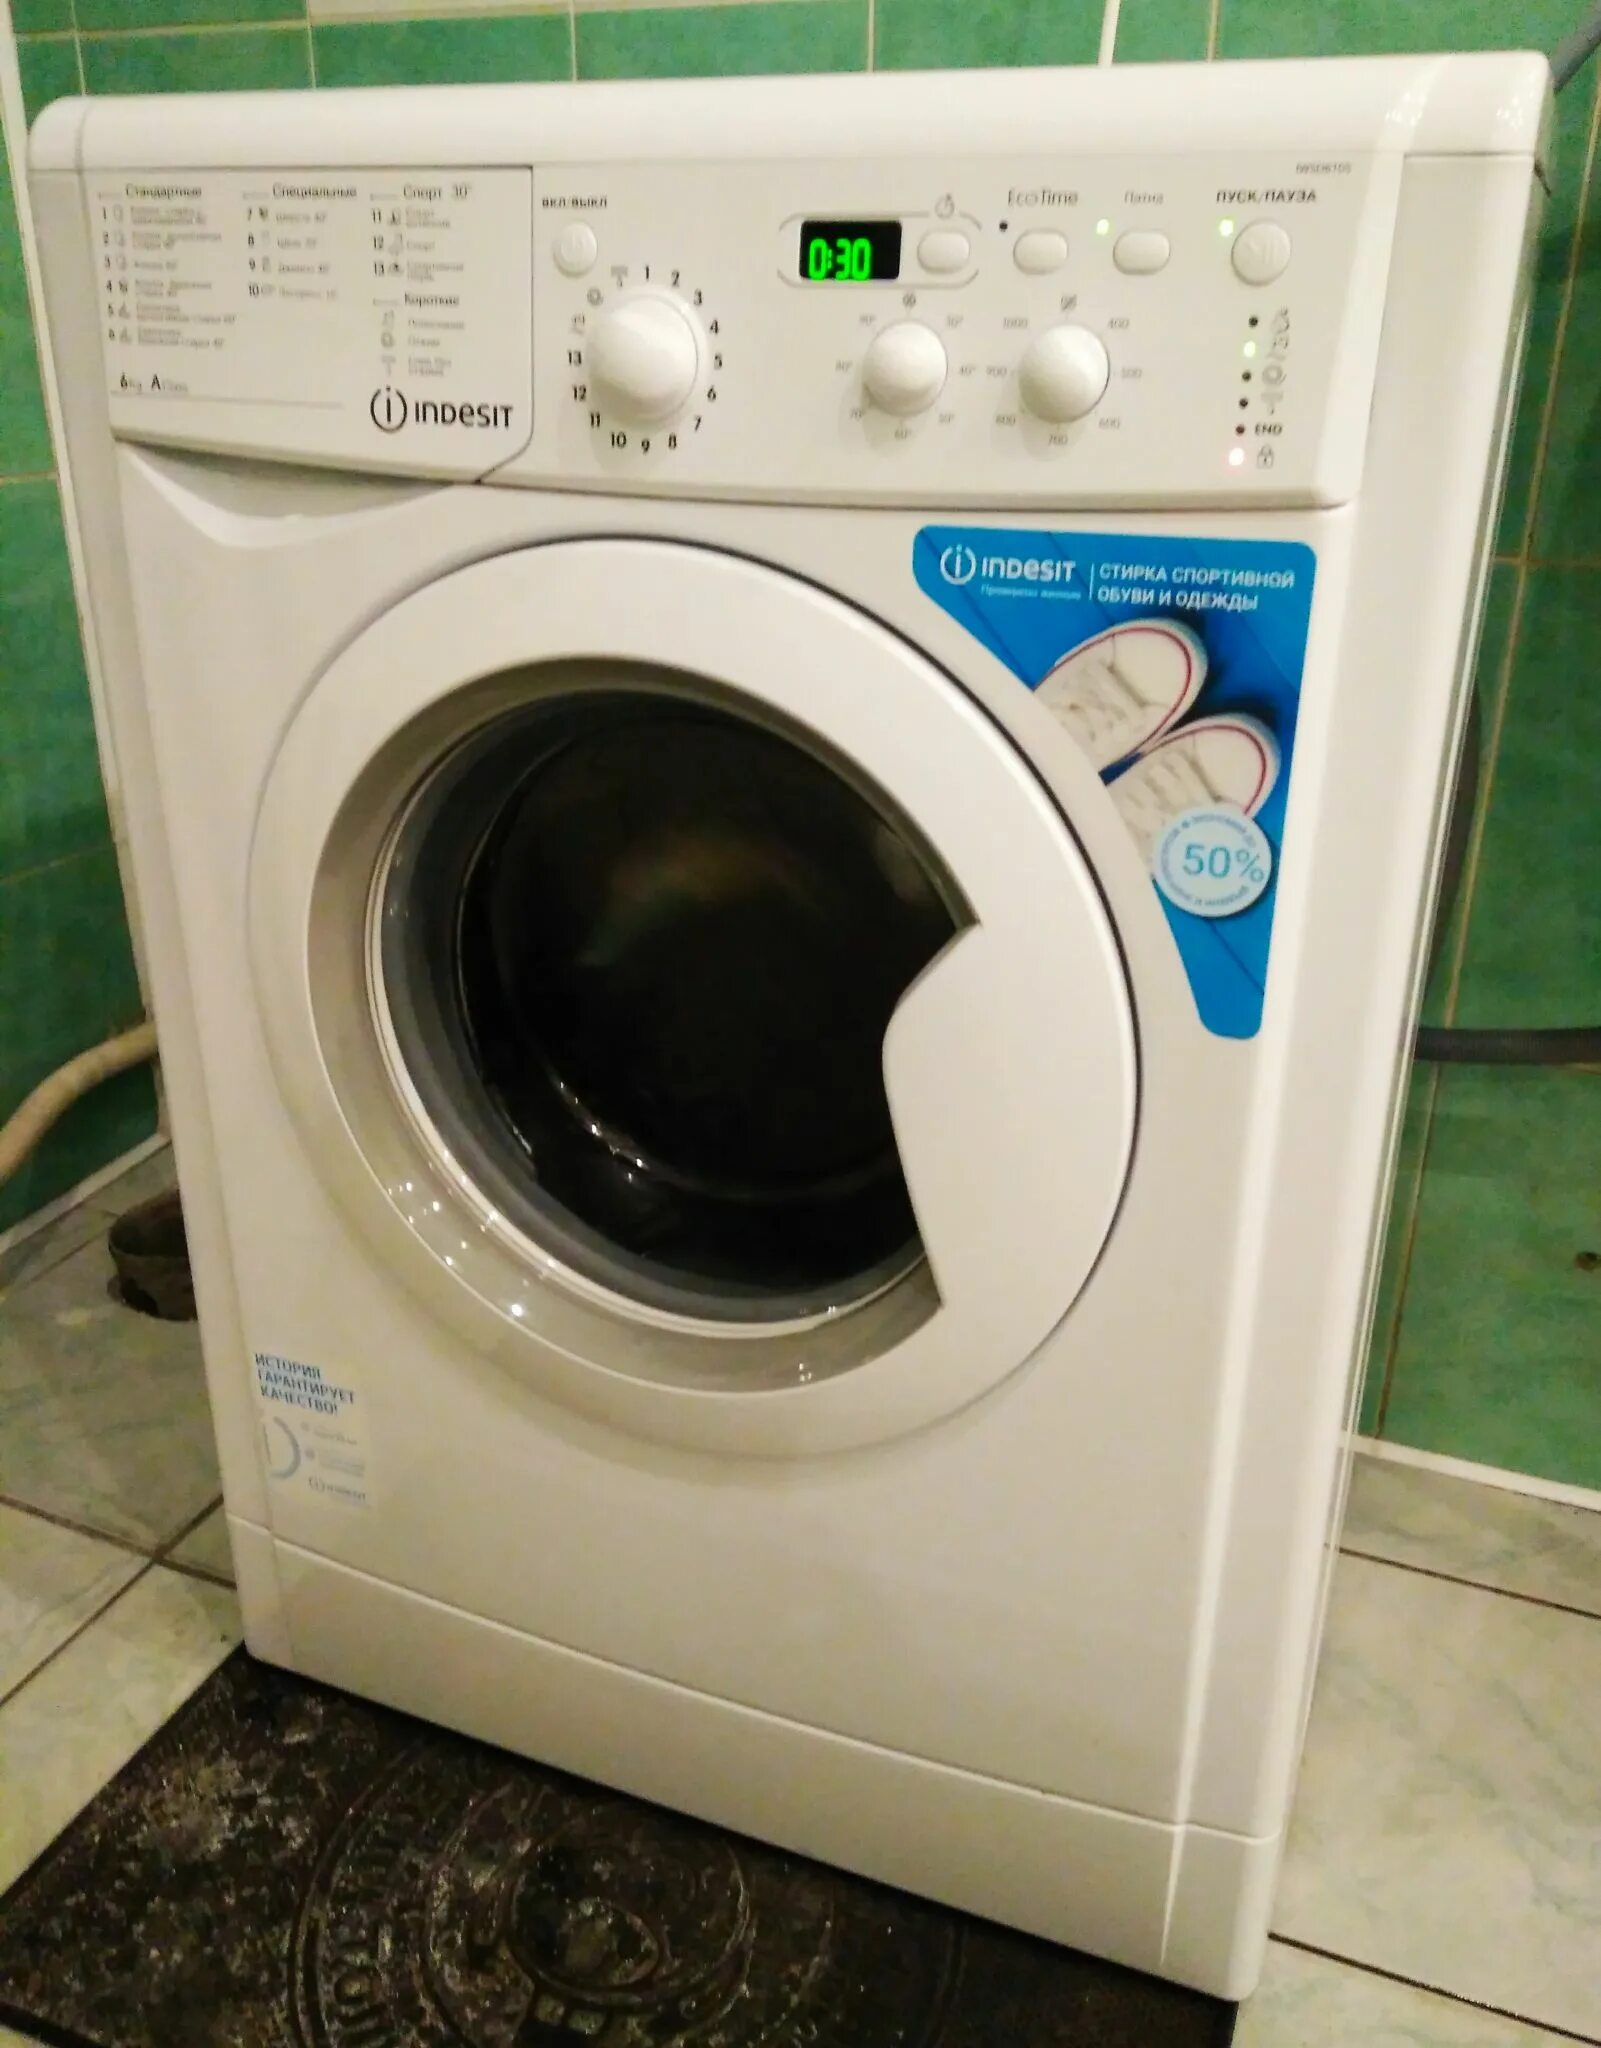 Машинка стиральная BWSE 6105. Индезит b